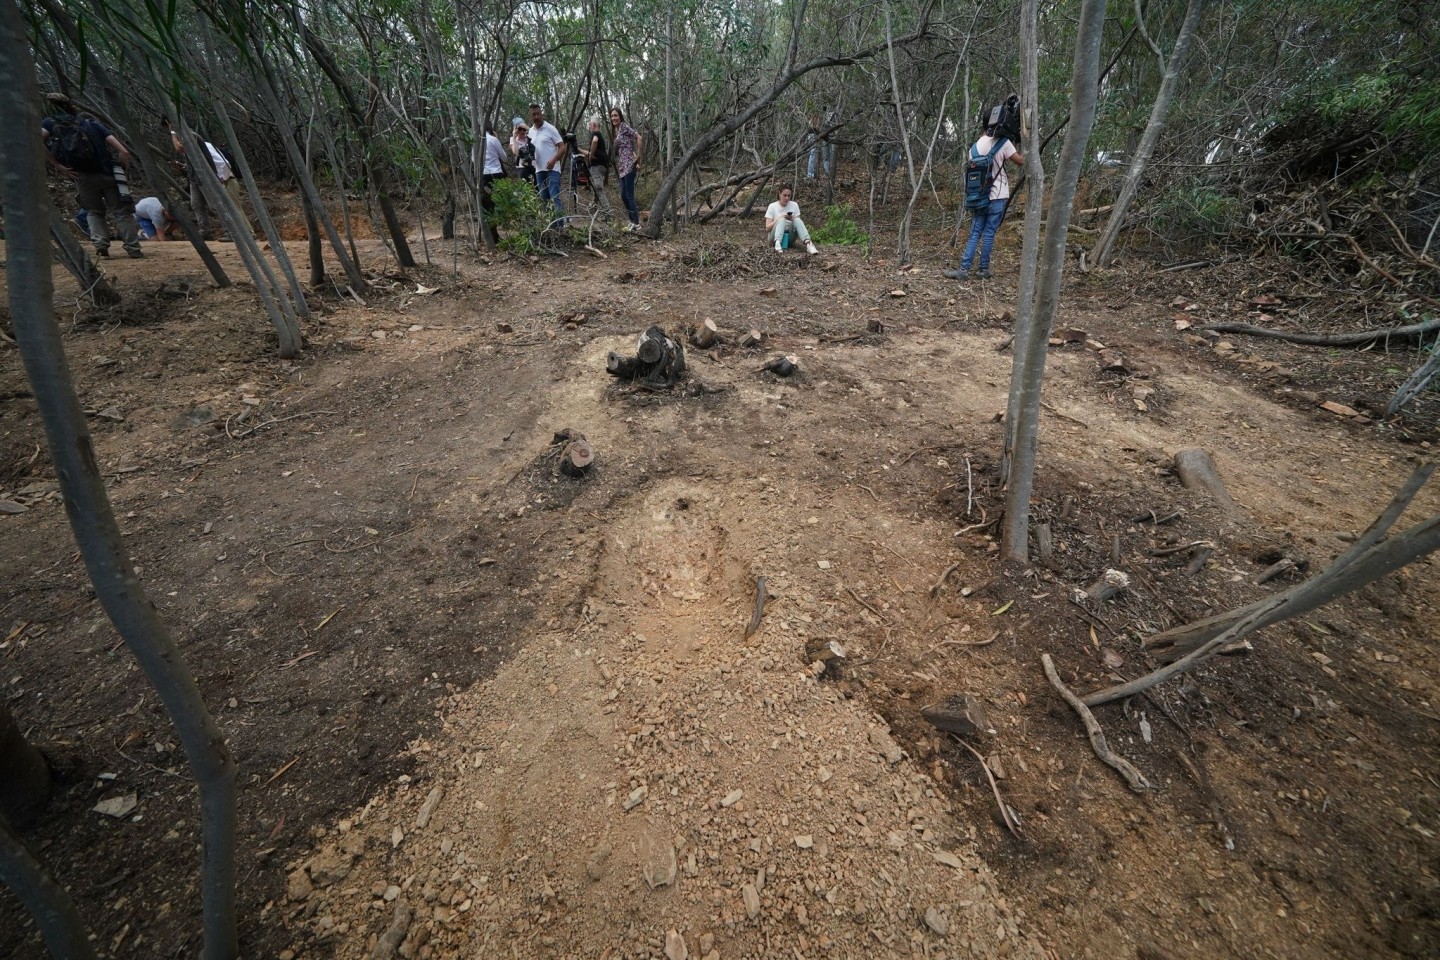 Journalisten stehen in der Nähe des Arade-Stausees in Portugal, wo vor 16 Jahren ein Mädchen spurlos verschwand.